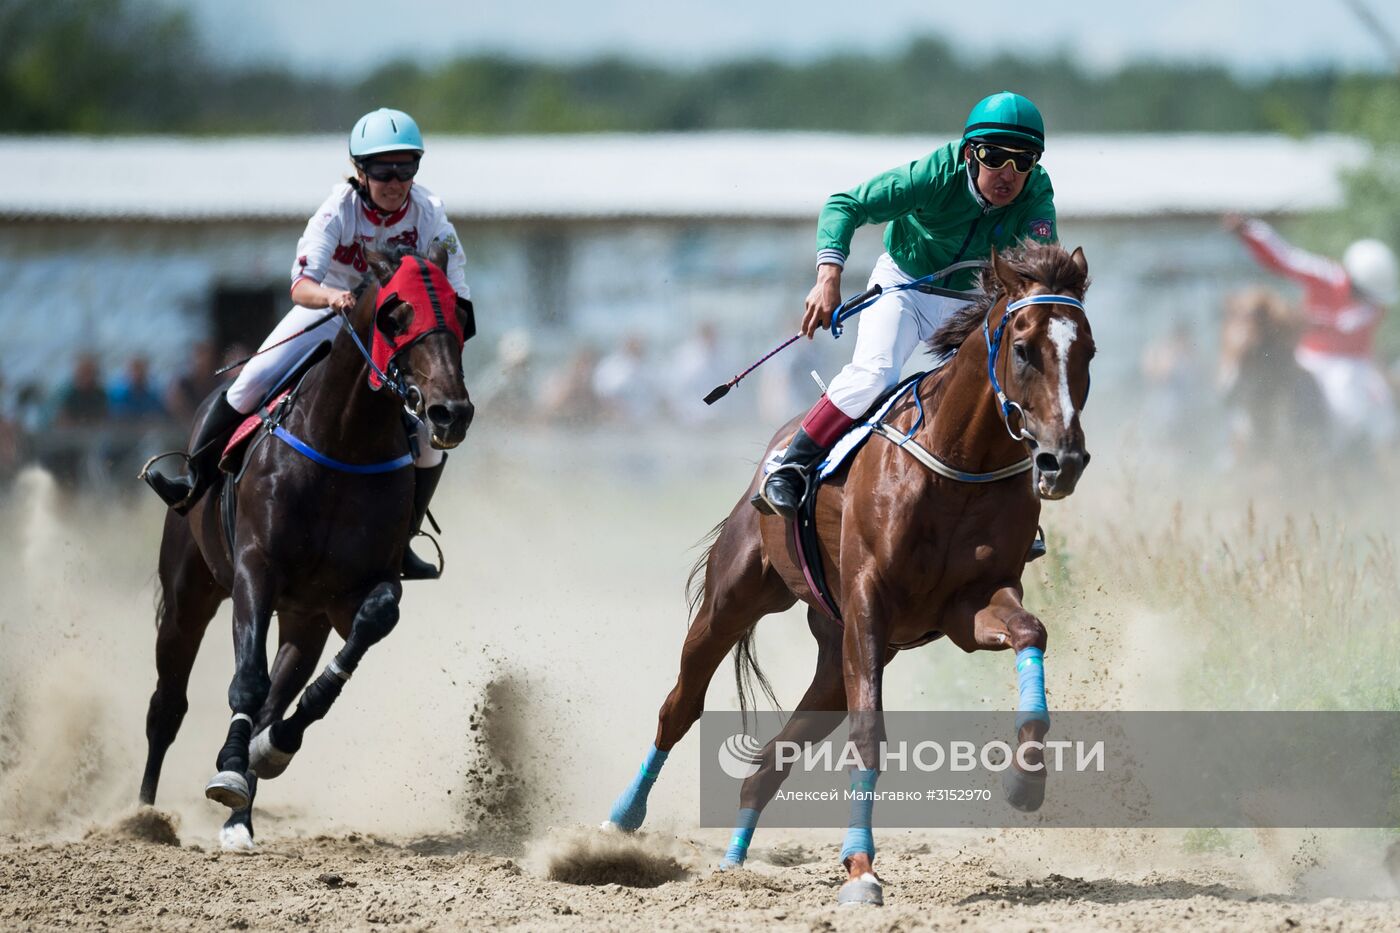 Проведение конных соревнований в Омской области